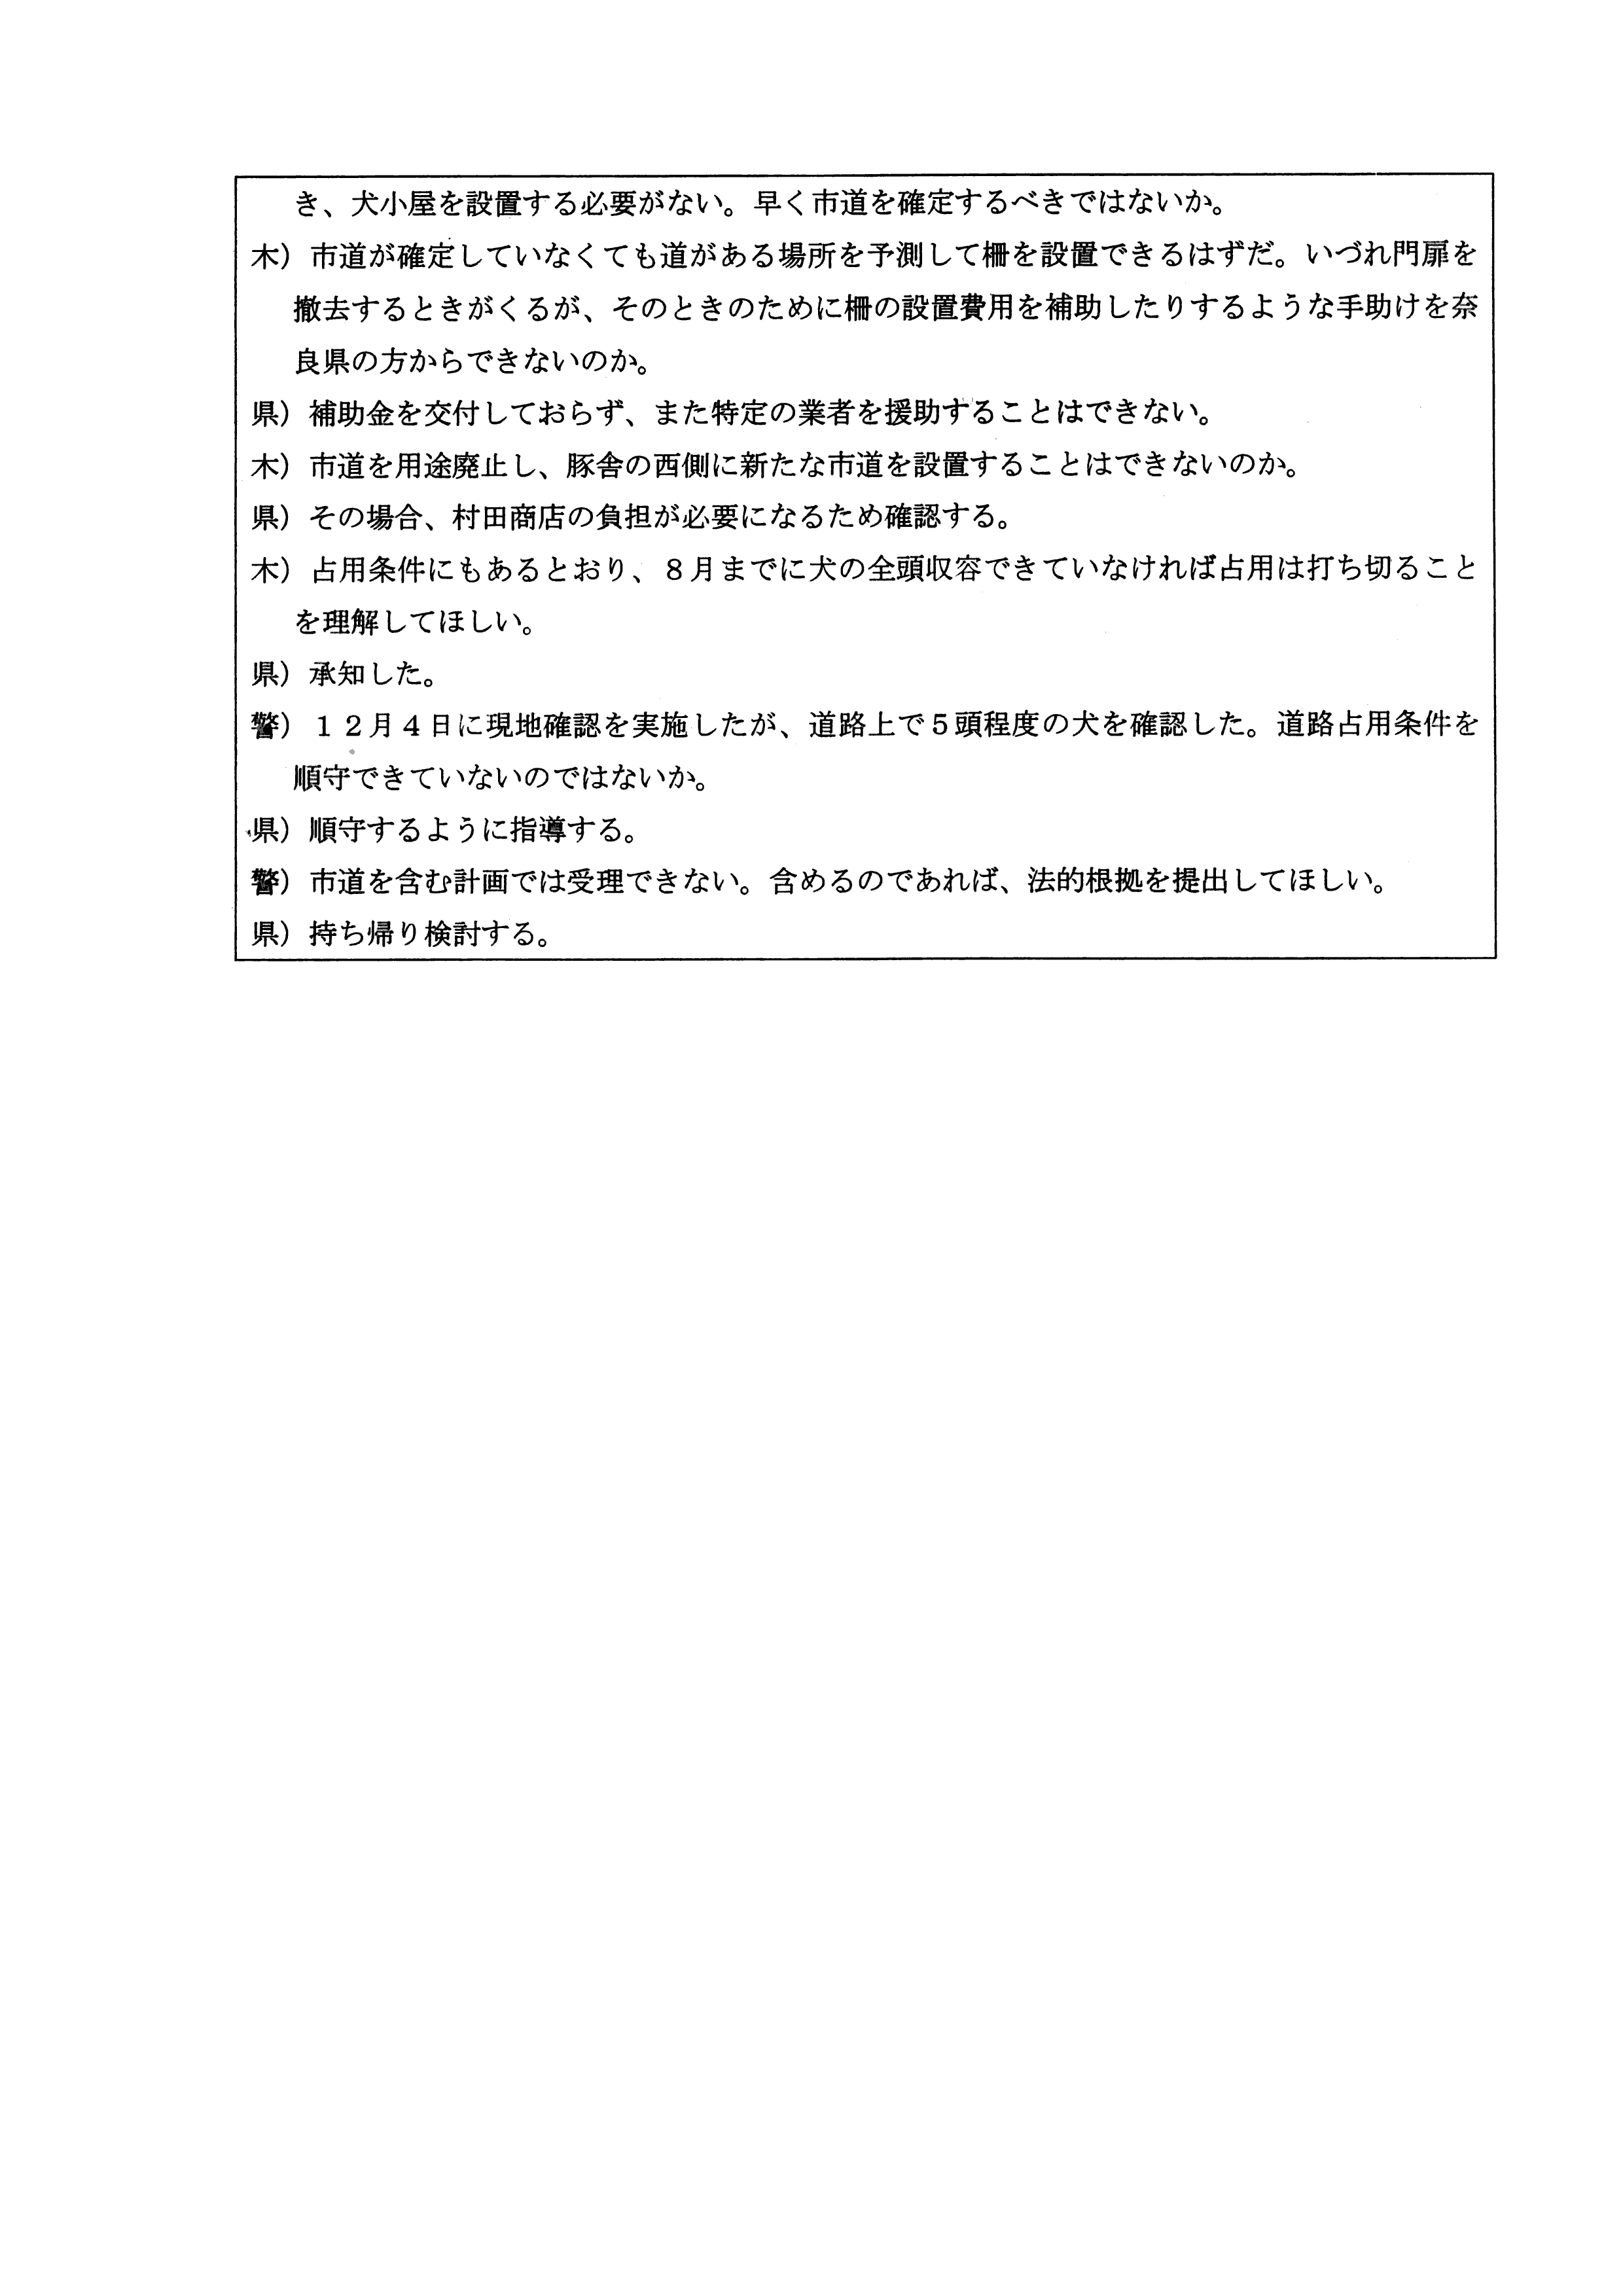 令和5(2023)年12月7日-(株)村田商店による道路使用及び占用許可に関する協議-02